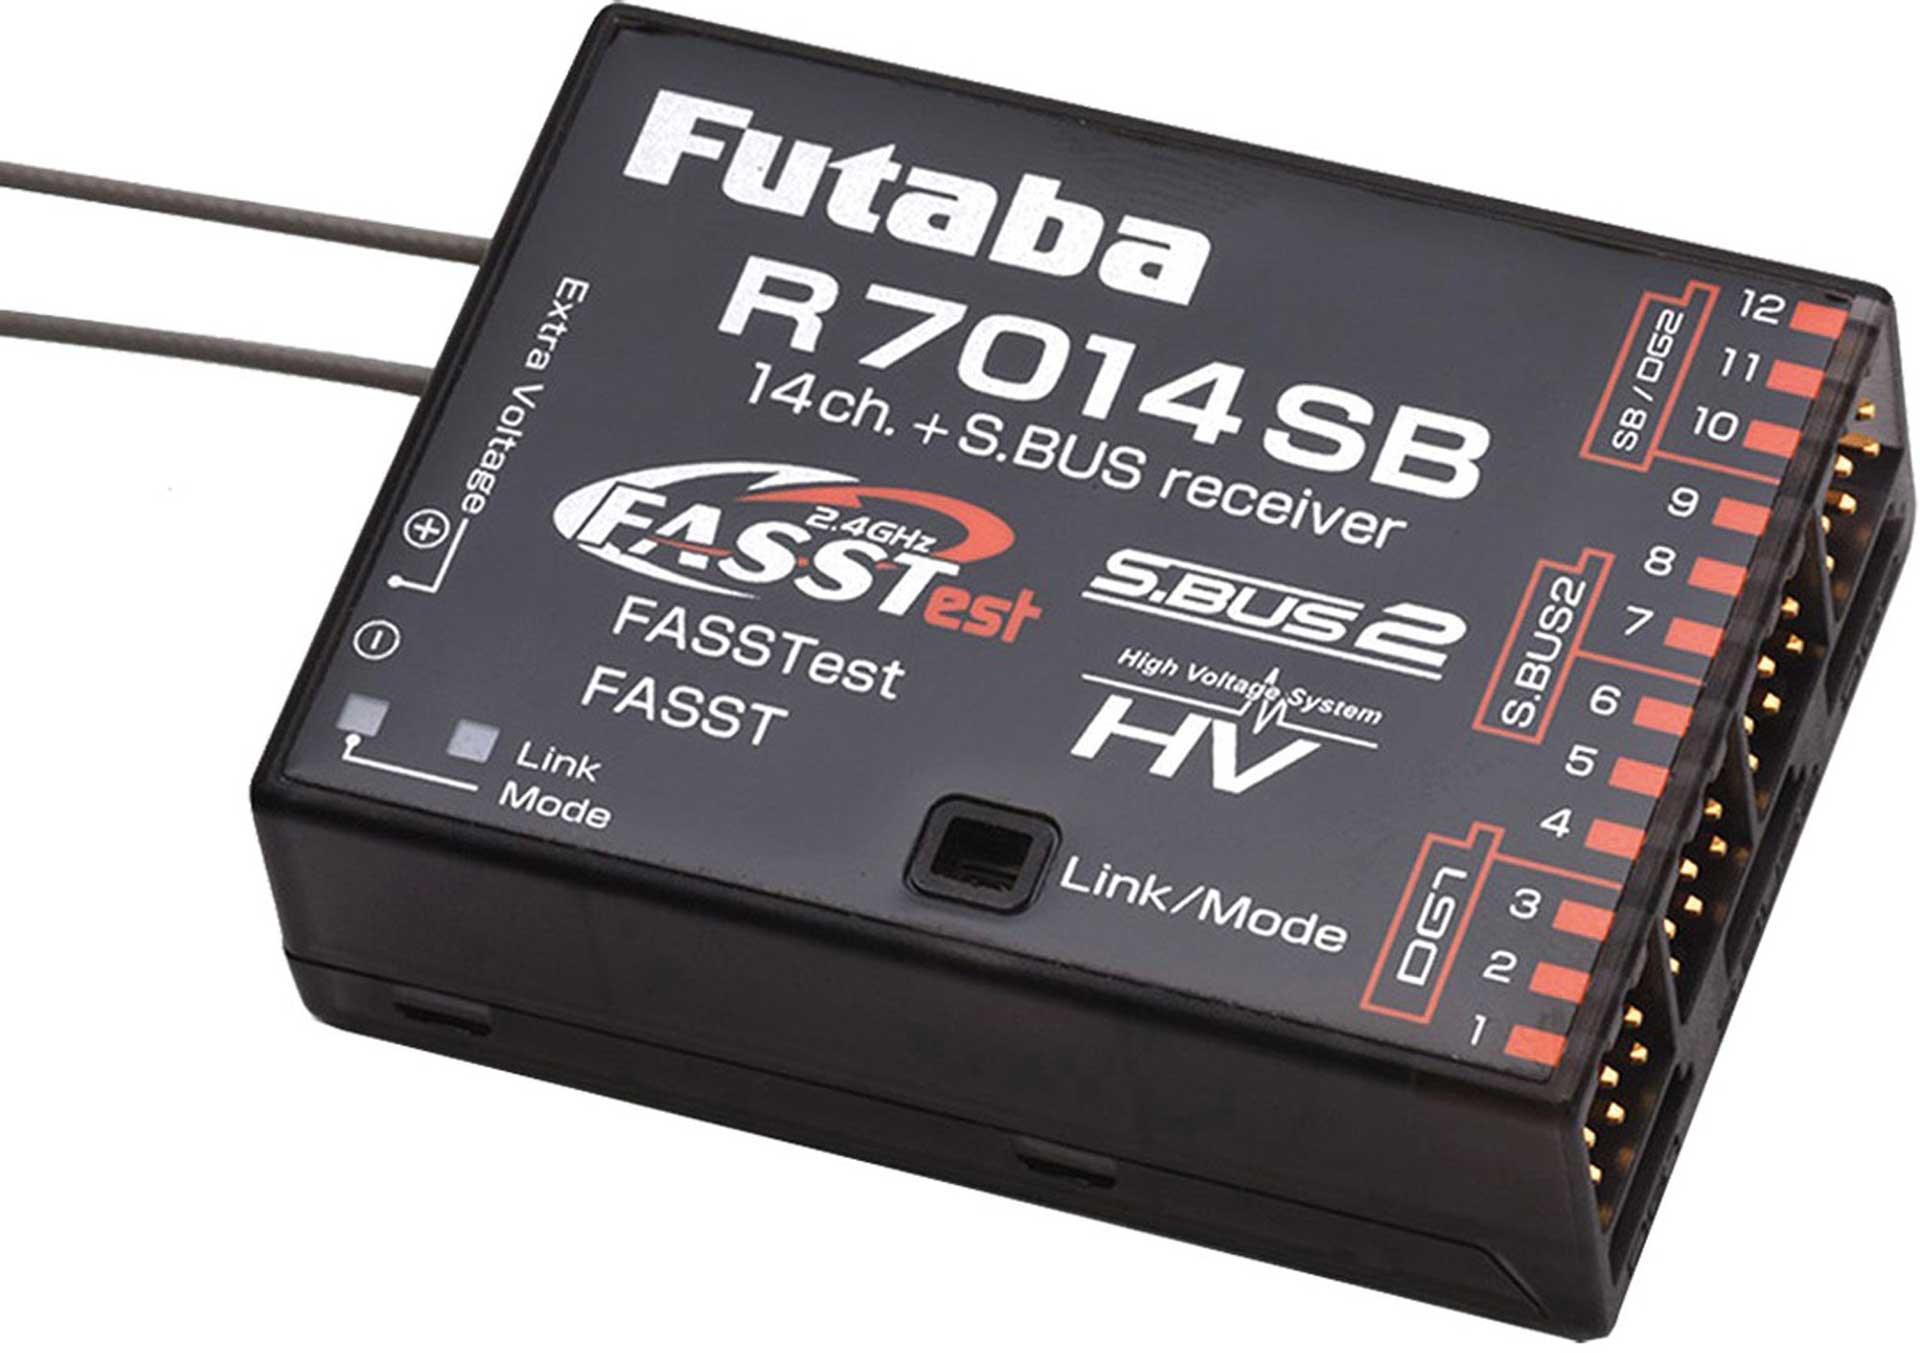 FUTABA R 7014SB FASSTest/FASST 14-channel